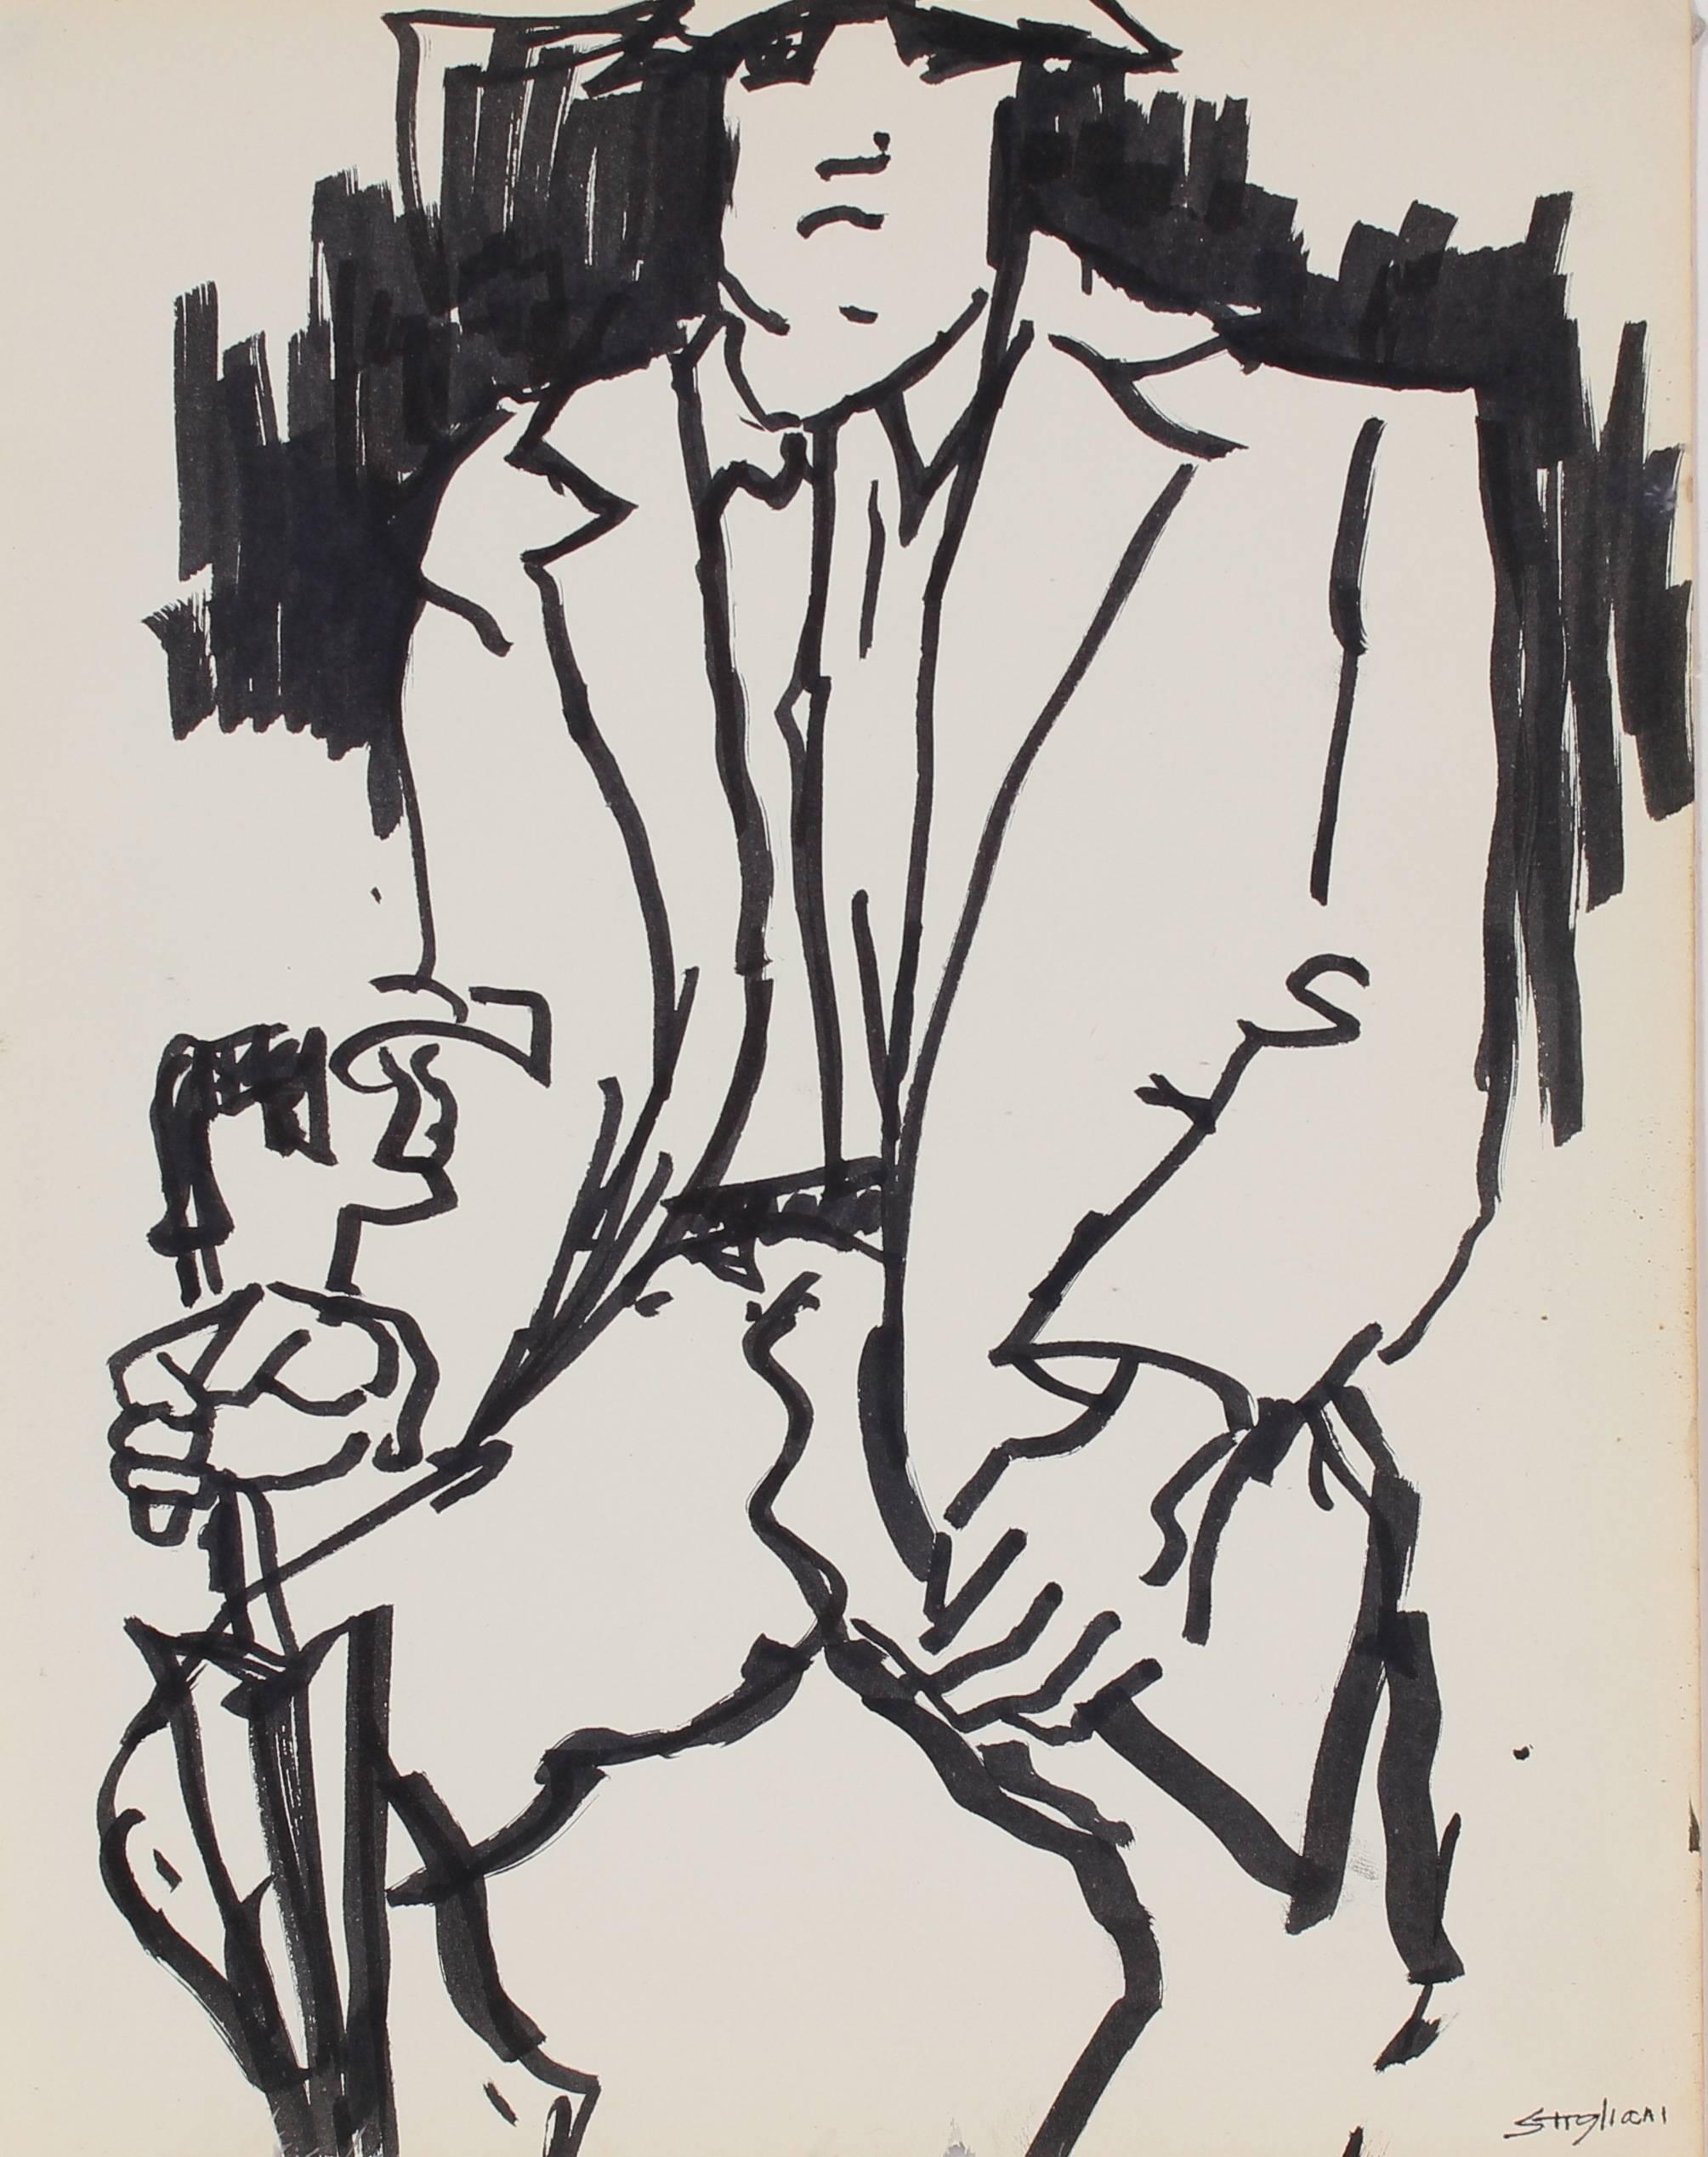 Pasquale Patrick Stigliani Figurative Art - New York Subway Portrait in Ink, Mid 20th Century